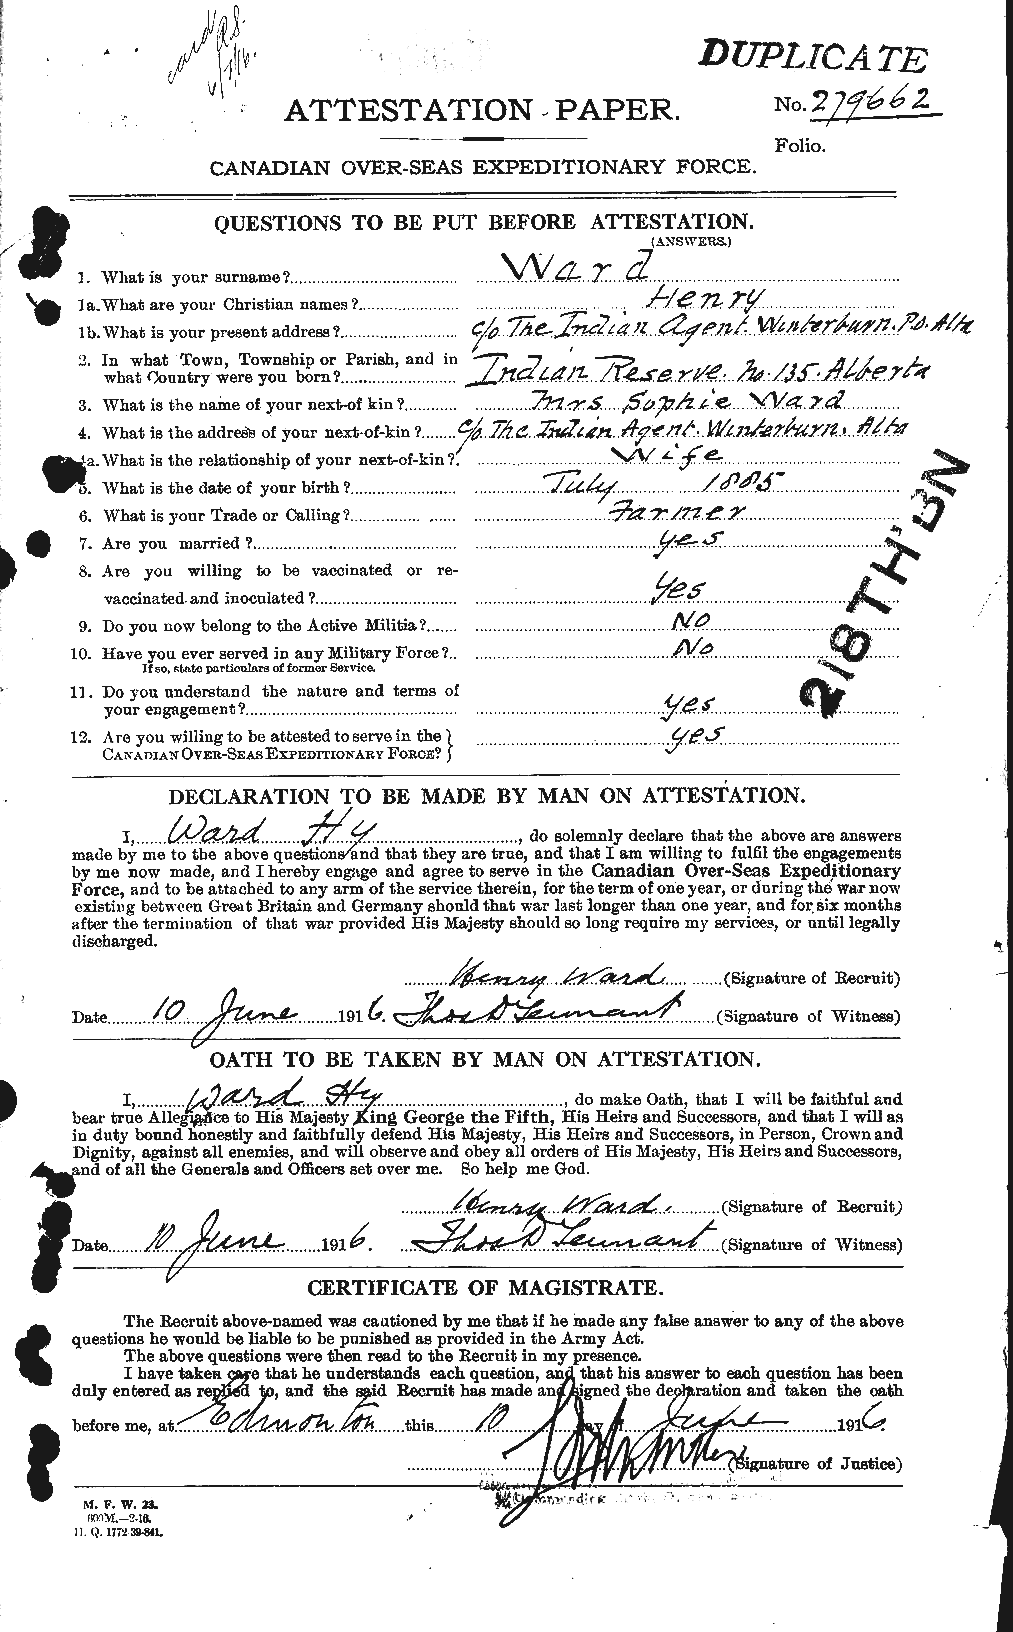 Dossiers du Personnel de la Première Guerre mondiale - CEC 657822a